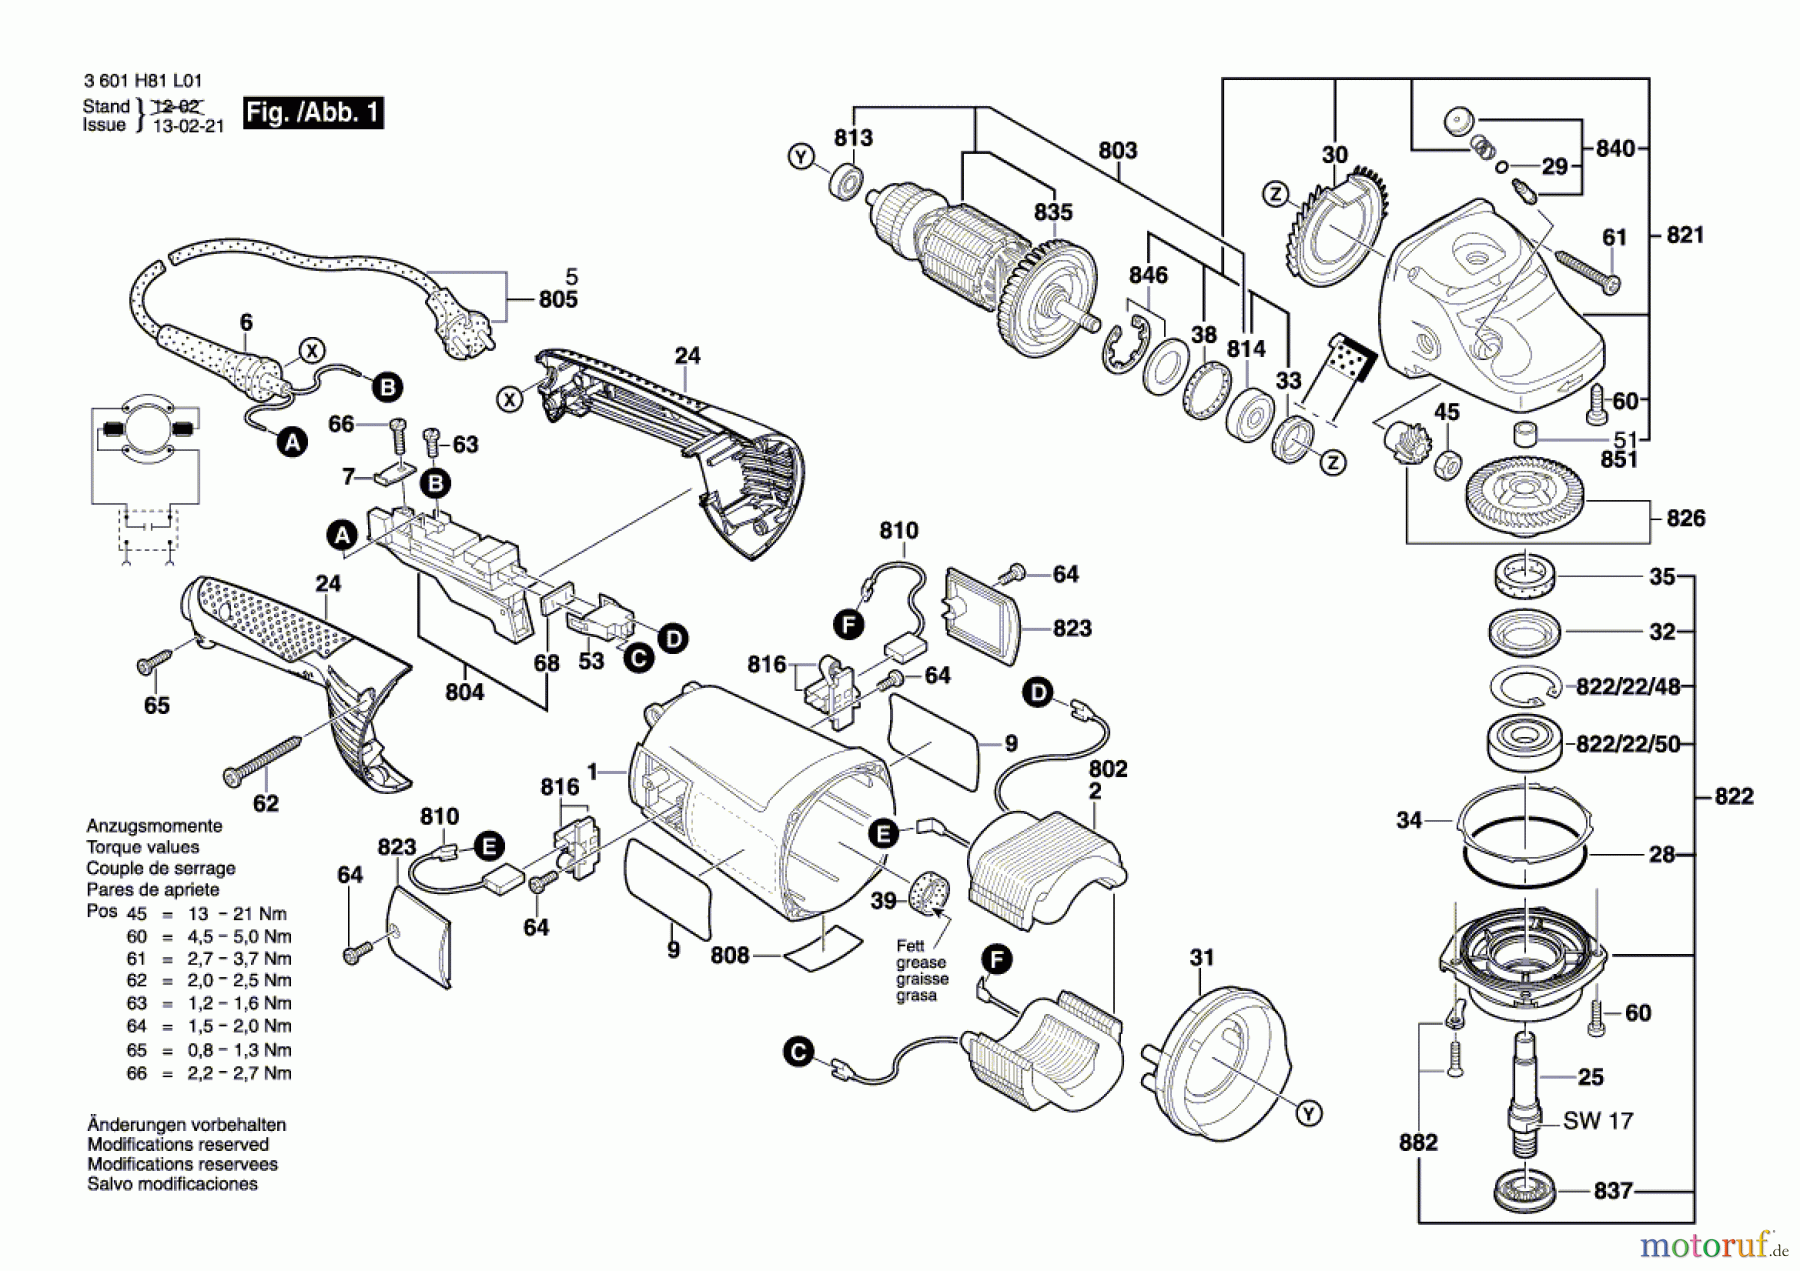  Bosch Werkzeug Winkelschleifer GWS 22-180 H Seite 1